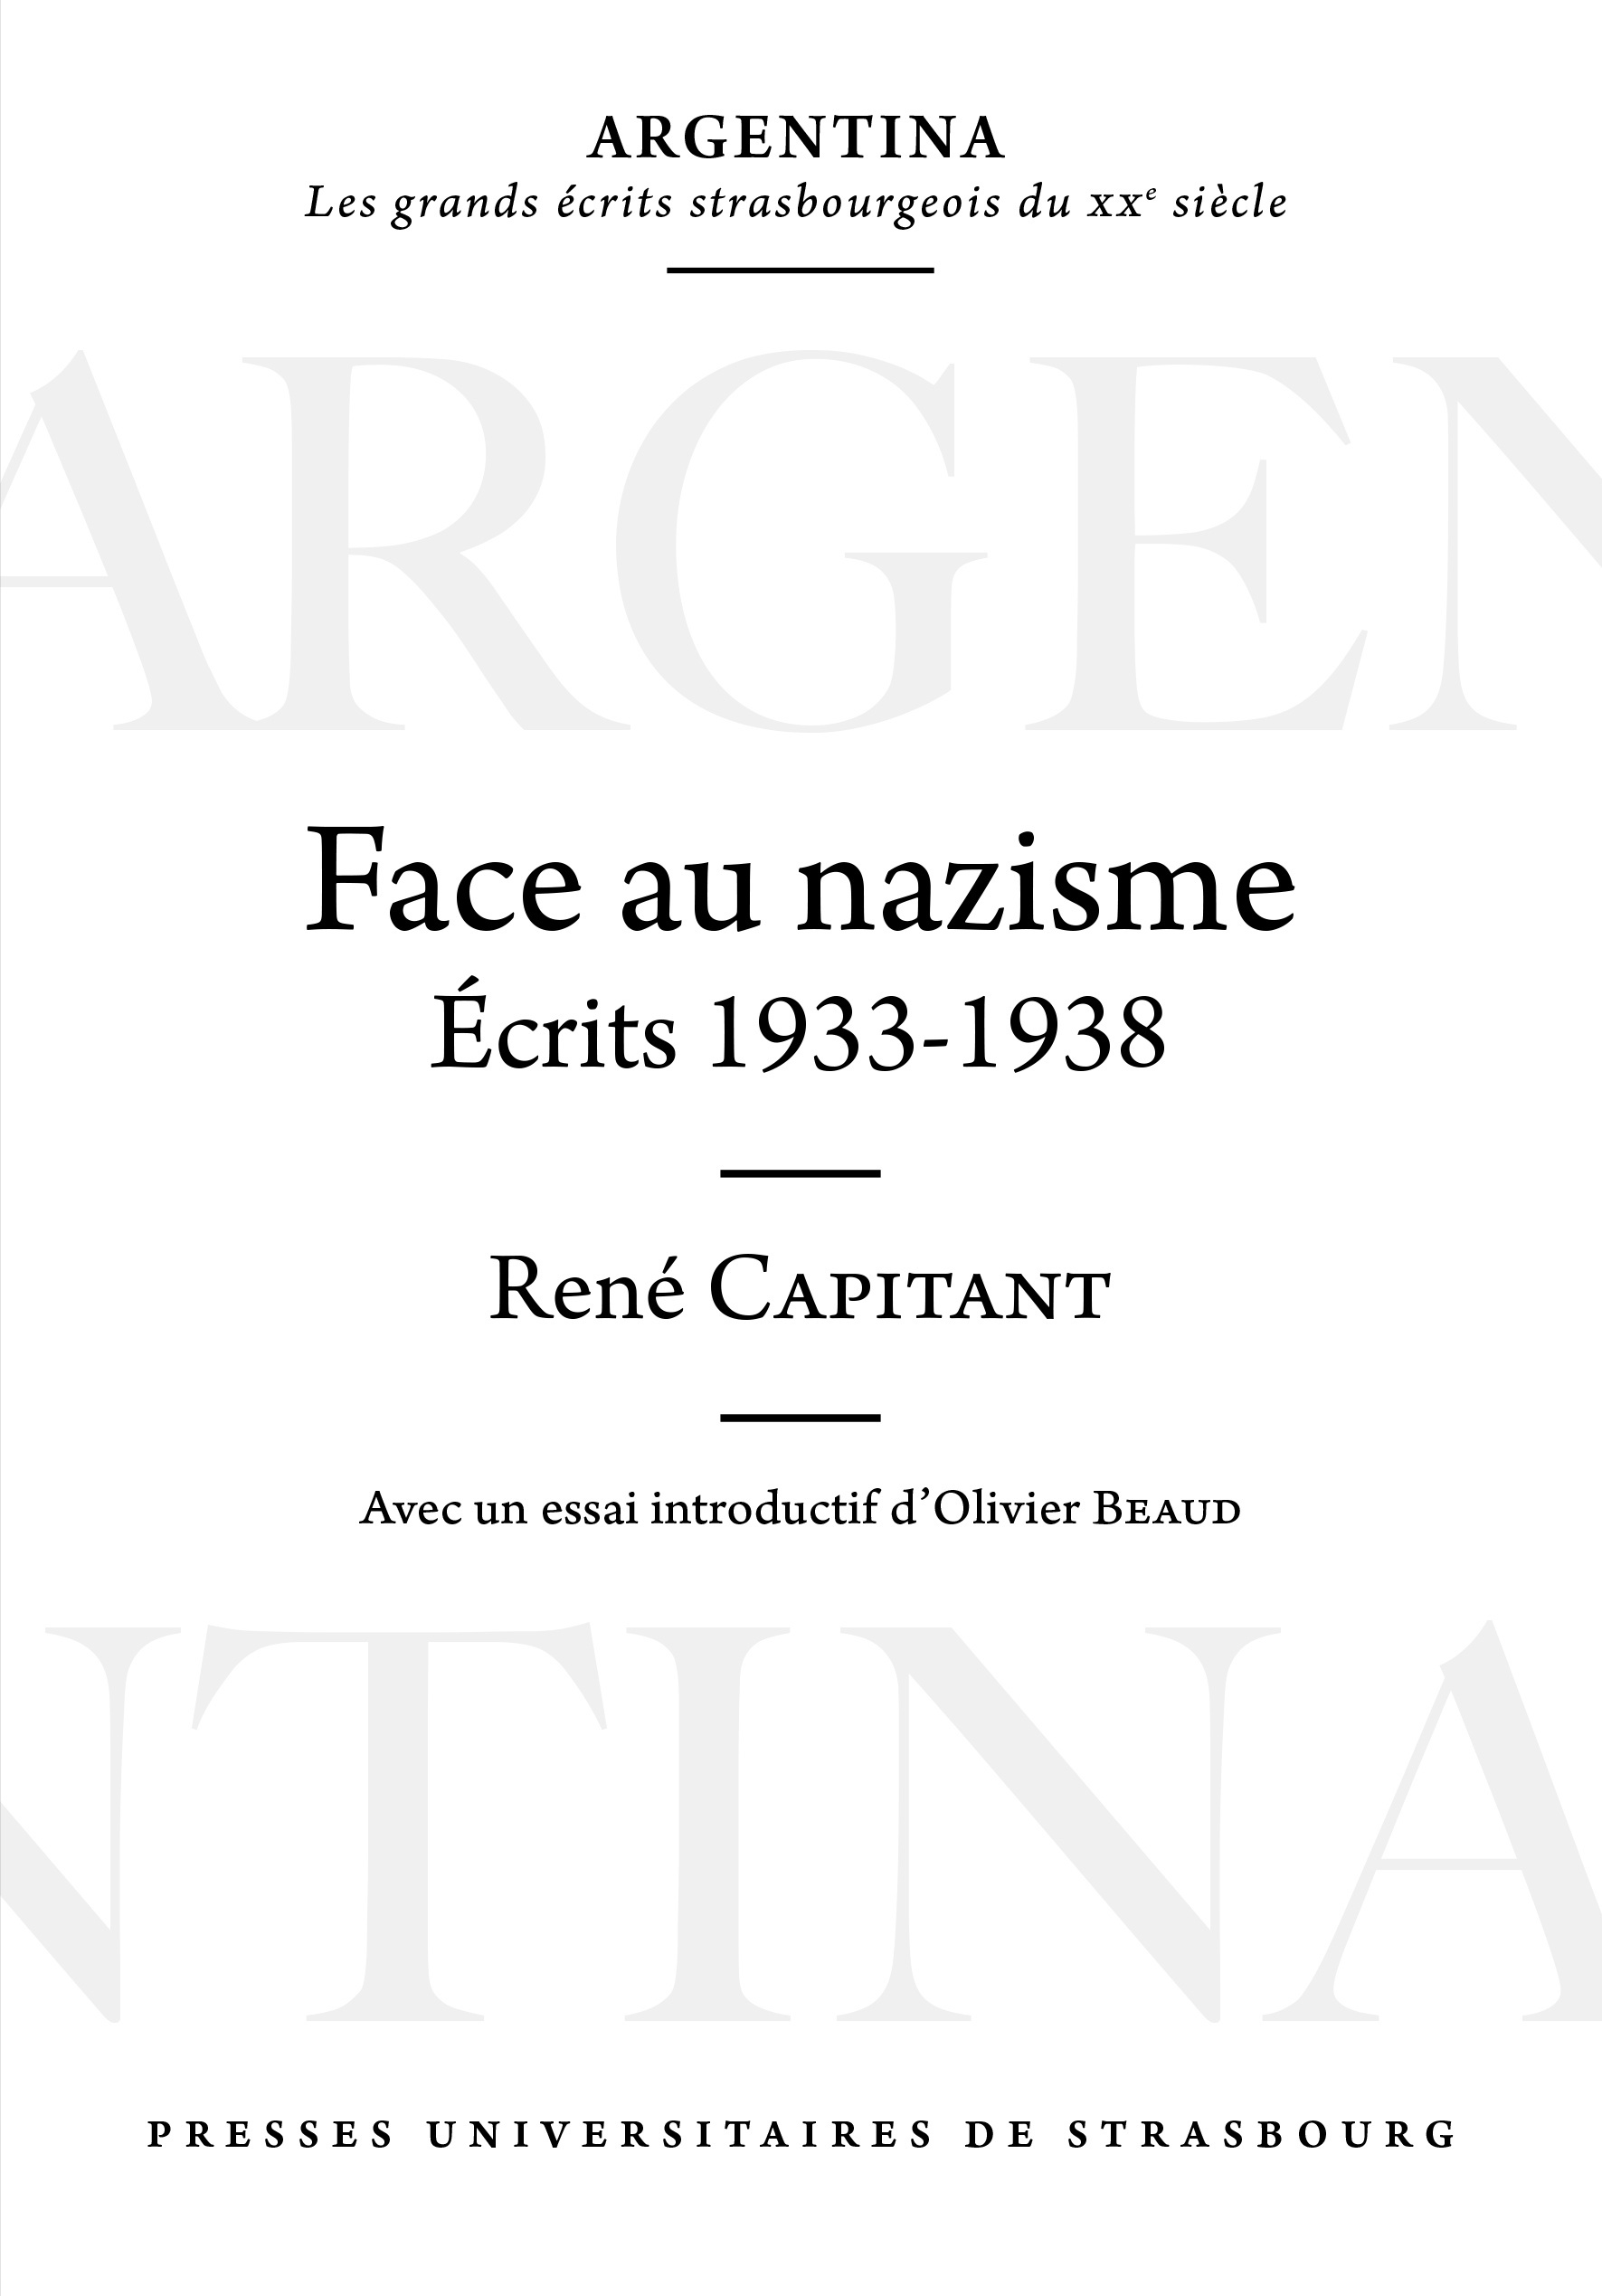 "Face au nazisme, Ecrits (1933-1938)", de René Capitant, publié dans notre collection "Argentina"